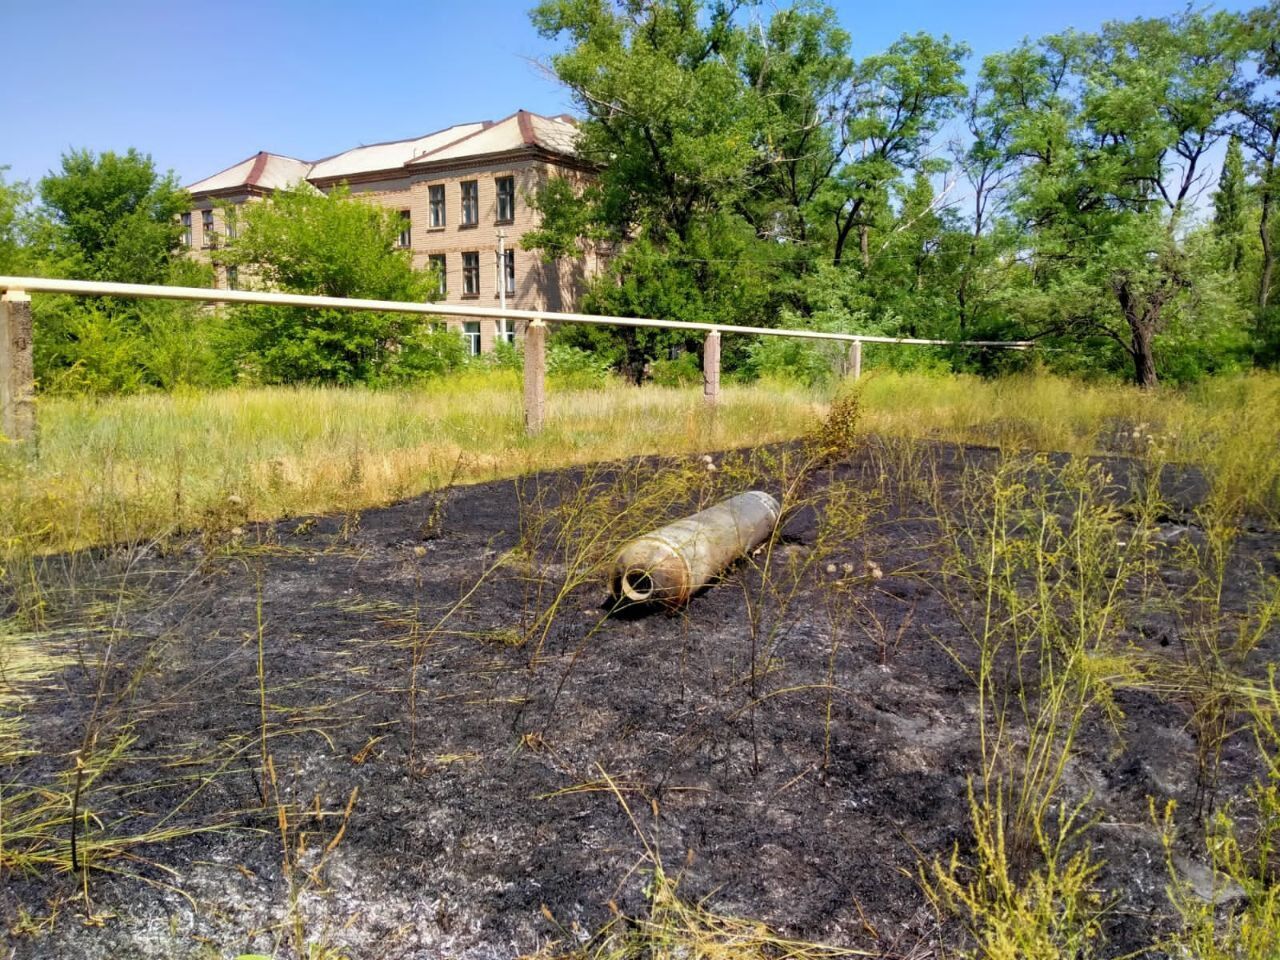 Одна ракета упала рядом с социальным объектом, но не разорвалась.